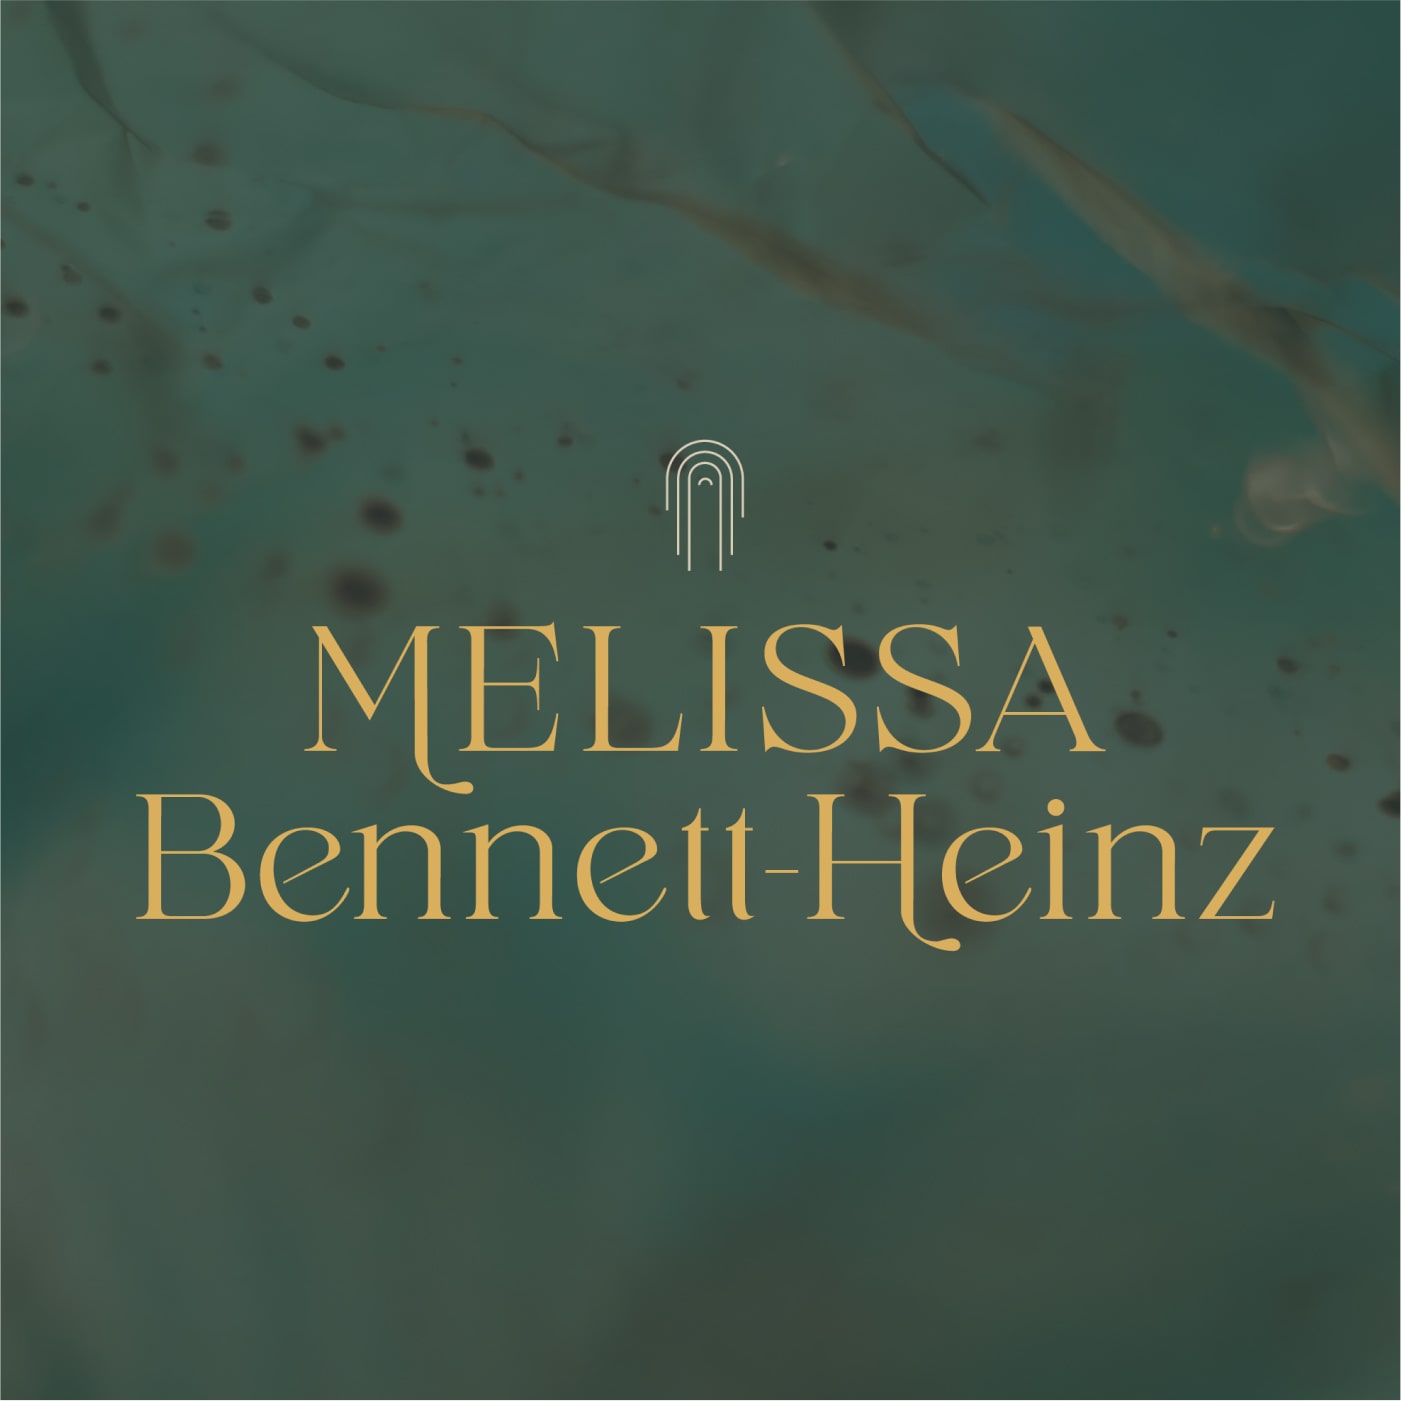 Melissa Bennett-Heinz